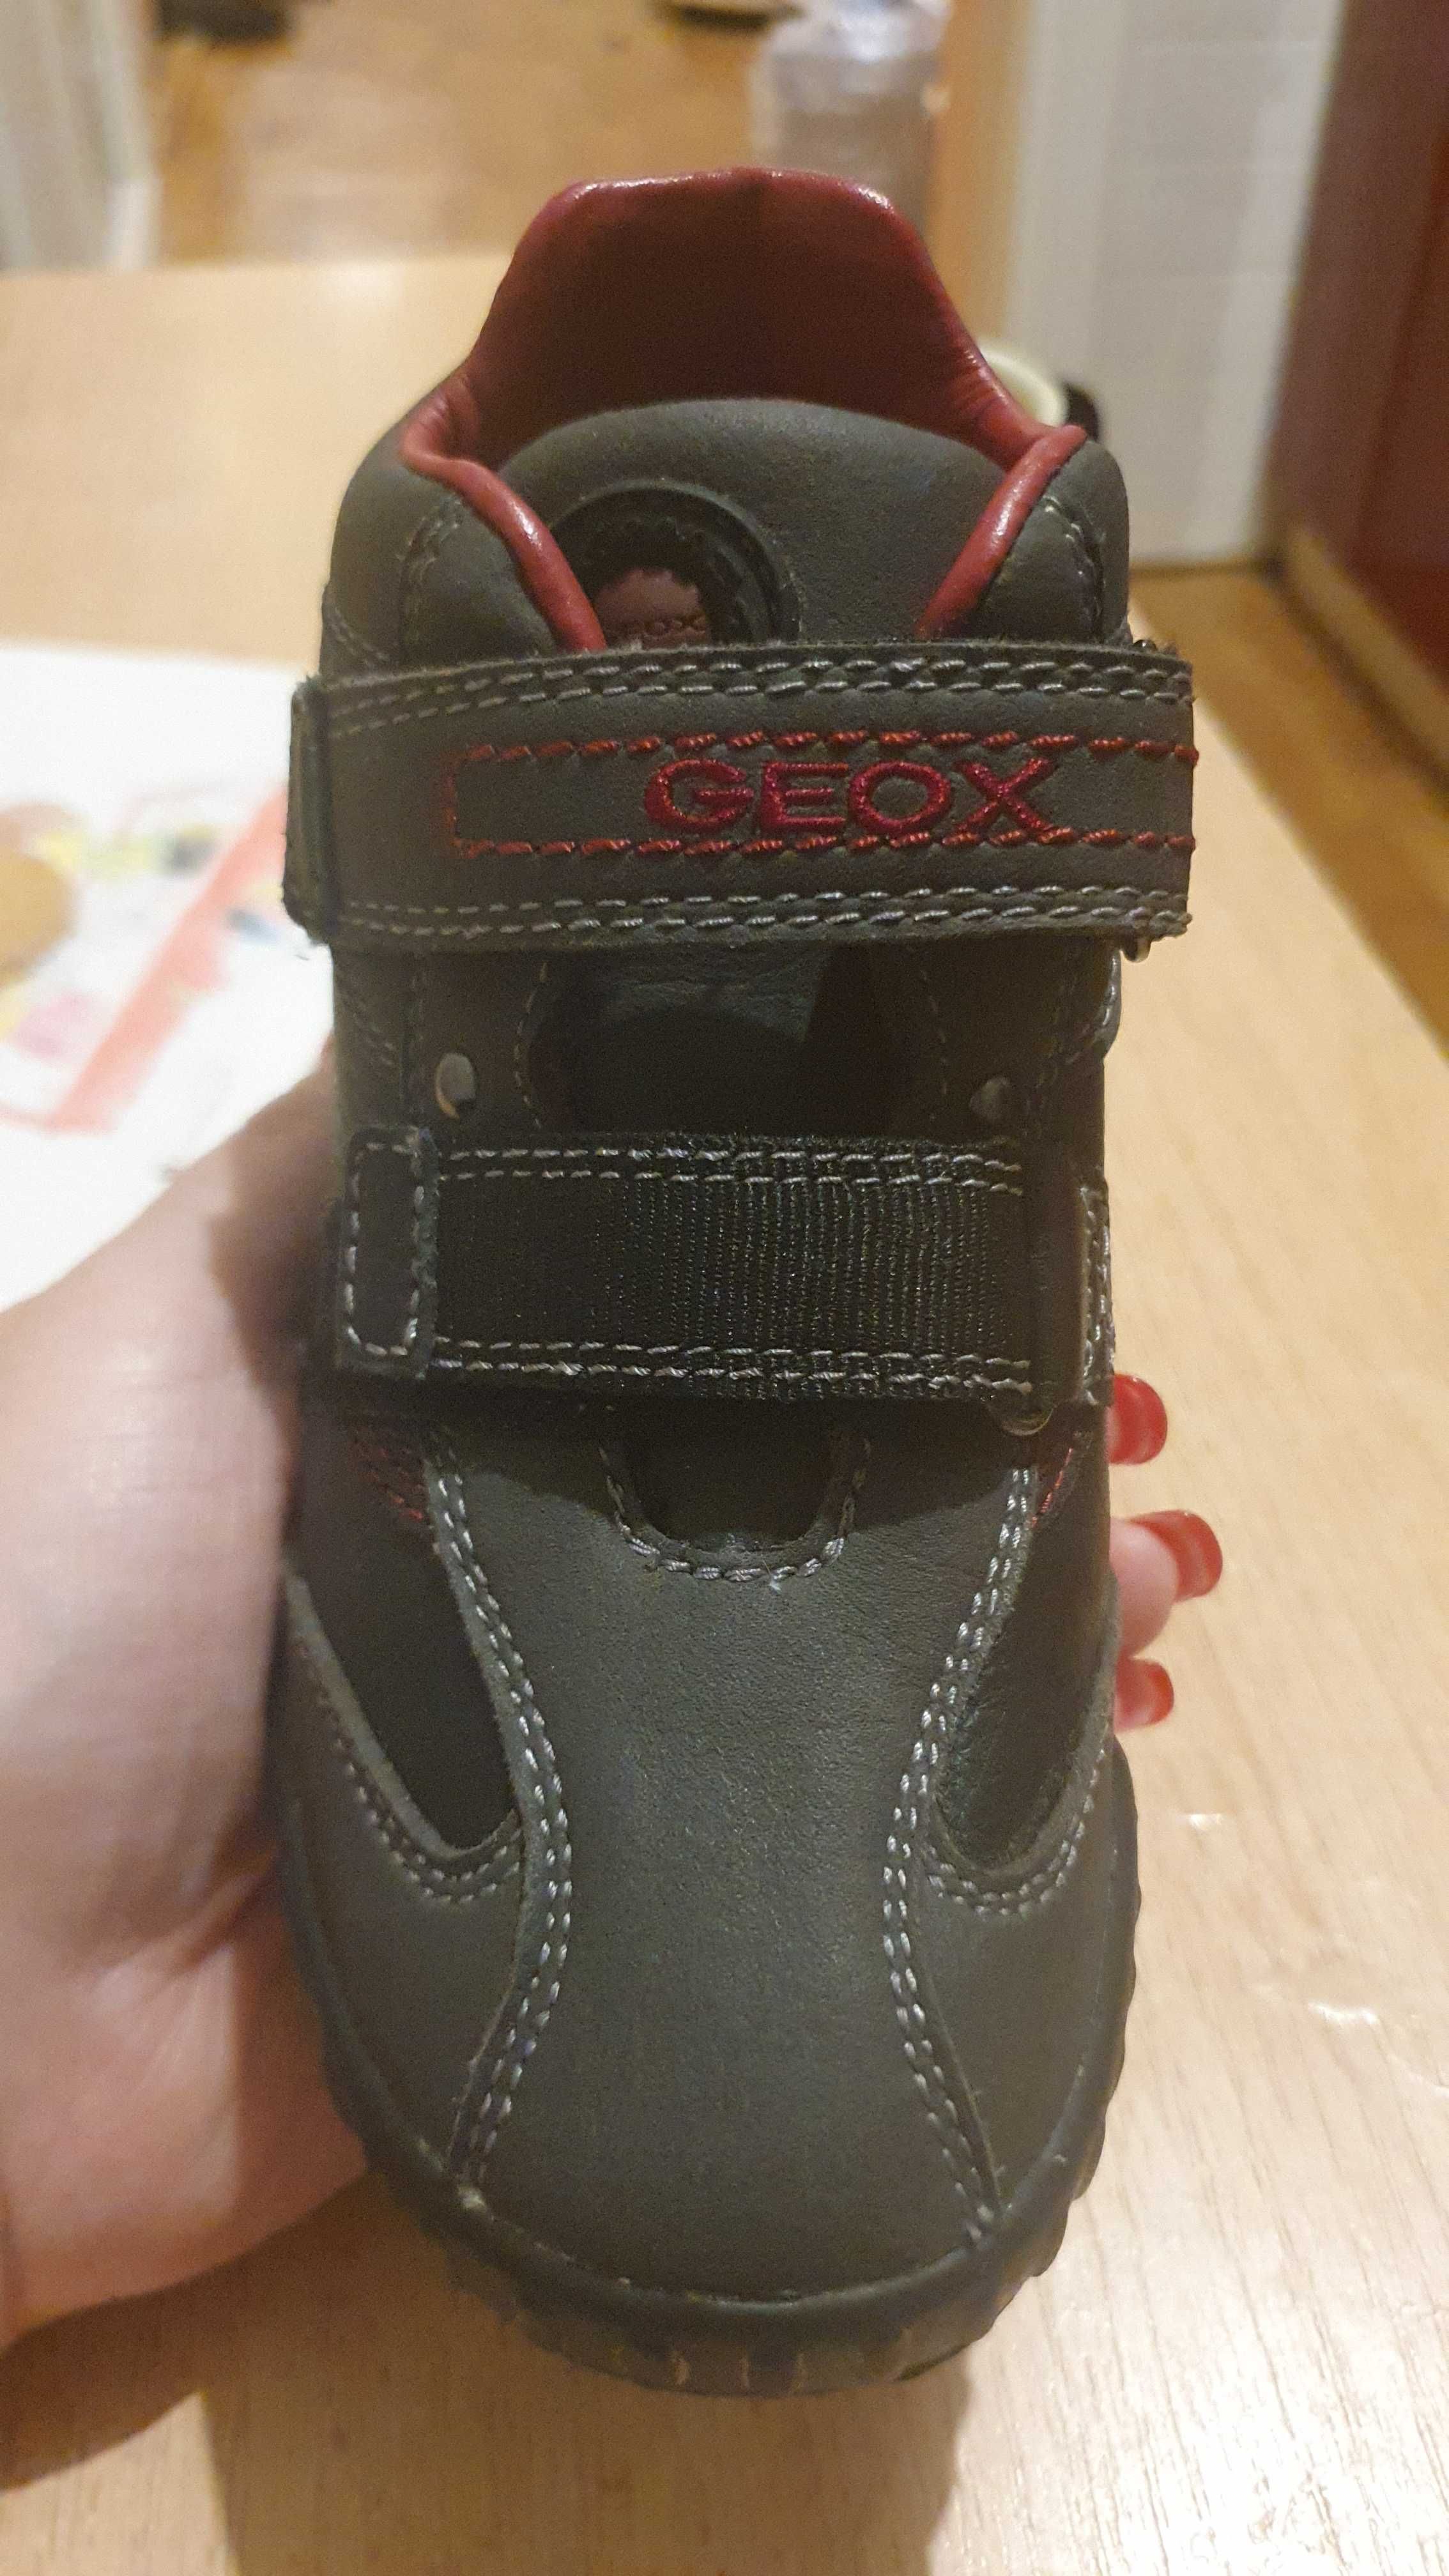 Продам дитячі кросівки GEOX, нові, розмір 27